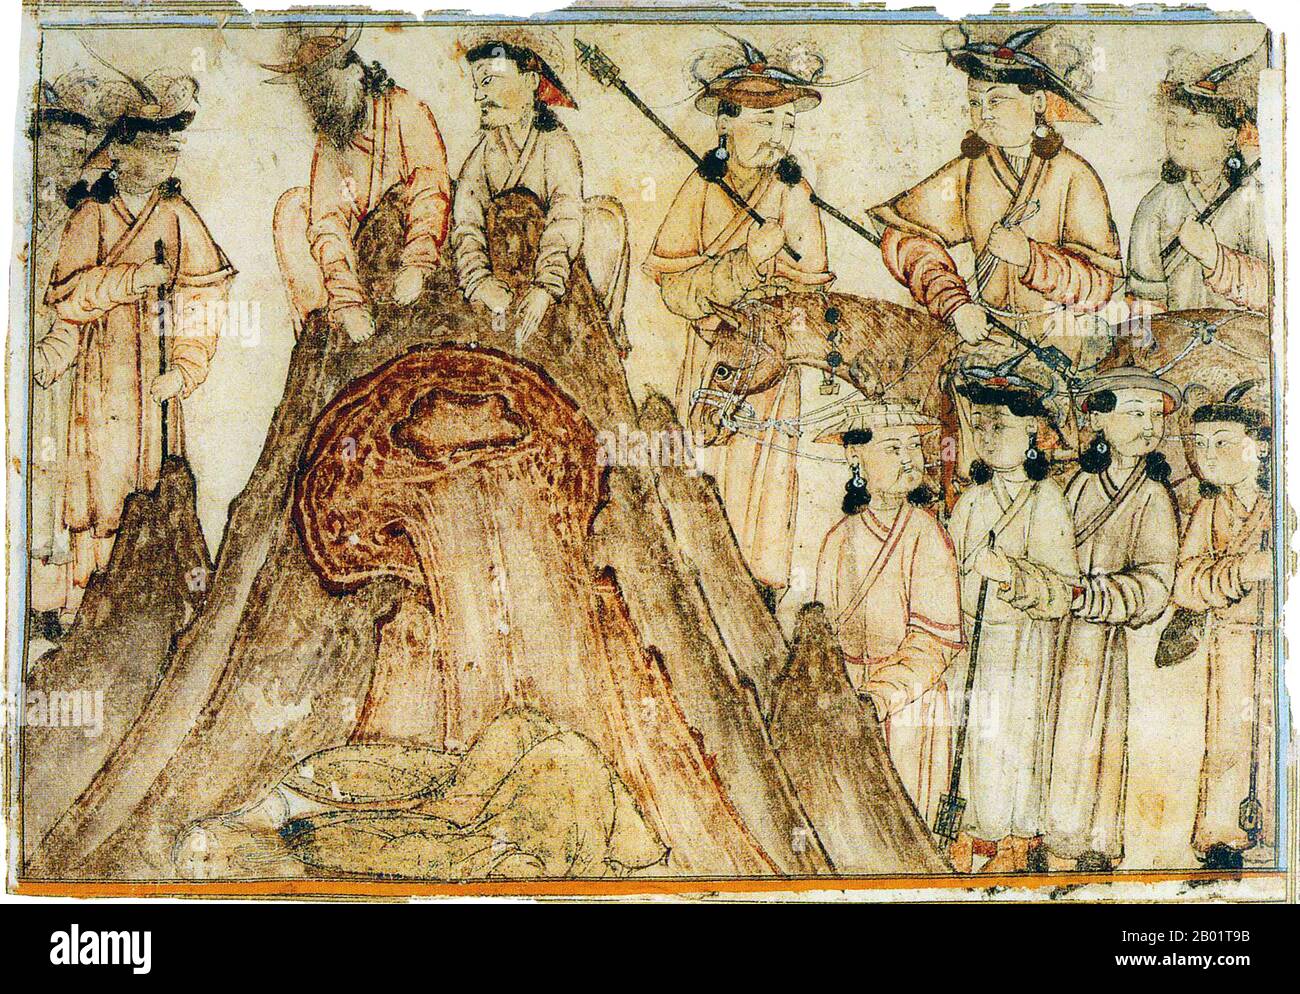 Iran/Persien: Hinrichtung durch Abwerfen einer Klippe. Aquarellmalerei von Rashid al-DIN, Jami al-Tawarikh, um 1305 n. Chr. Das Jāmi’ al-tawārīkh („Kompendium der Chroniken“) ist ein iranisches Literatur- und Geschichtswerk, das Rashid-al-DIN Hamadani zu Beginn des 14. Jahrhunderts geschrieben hat. Stockfoto